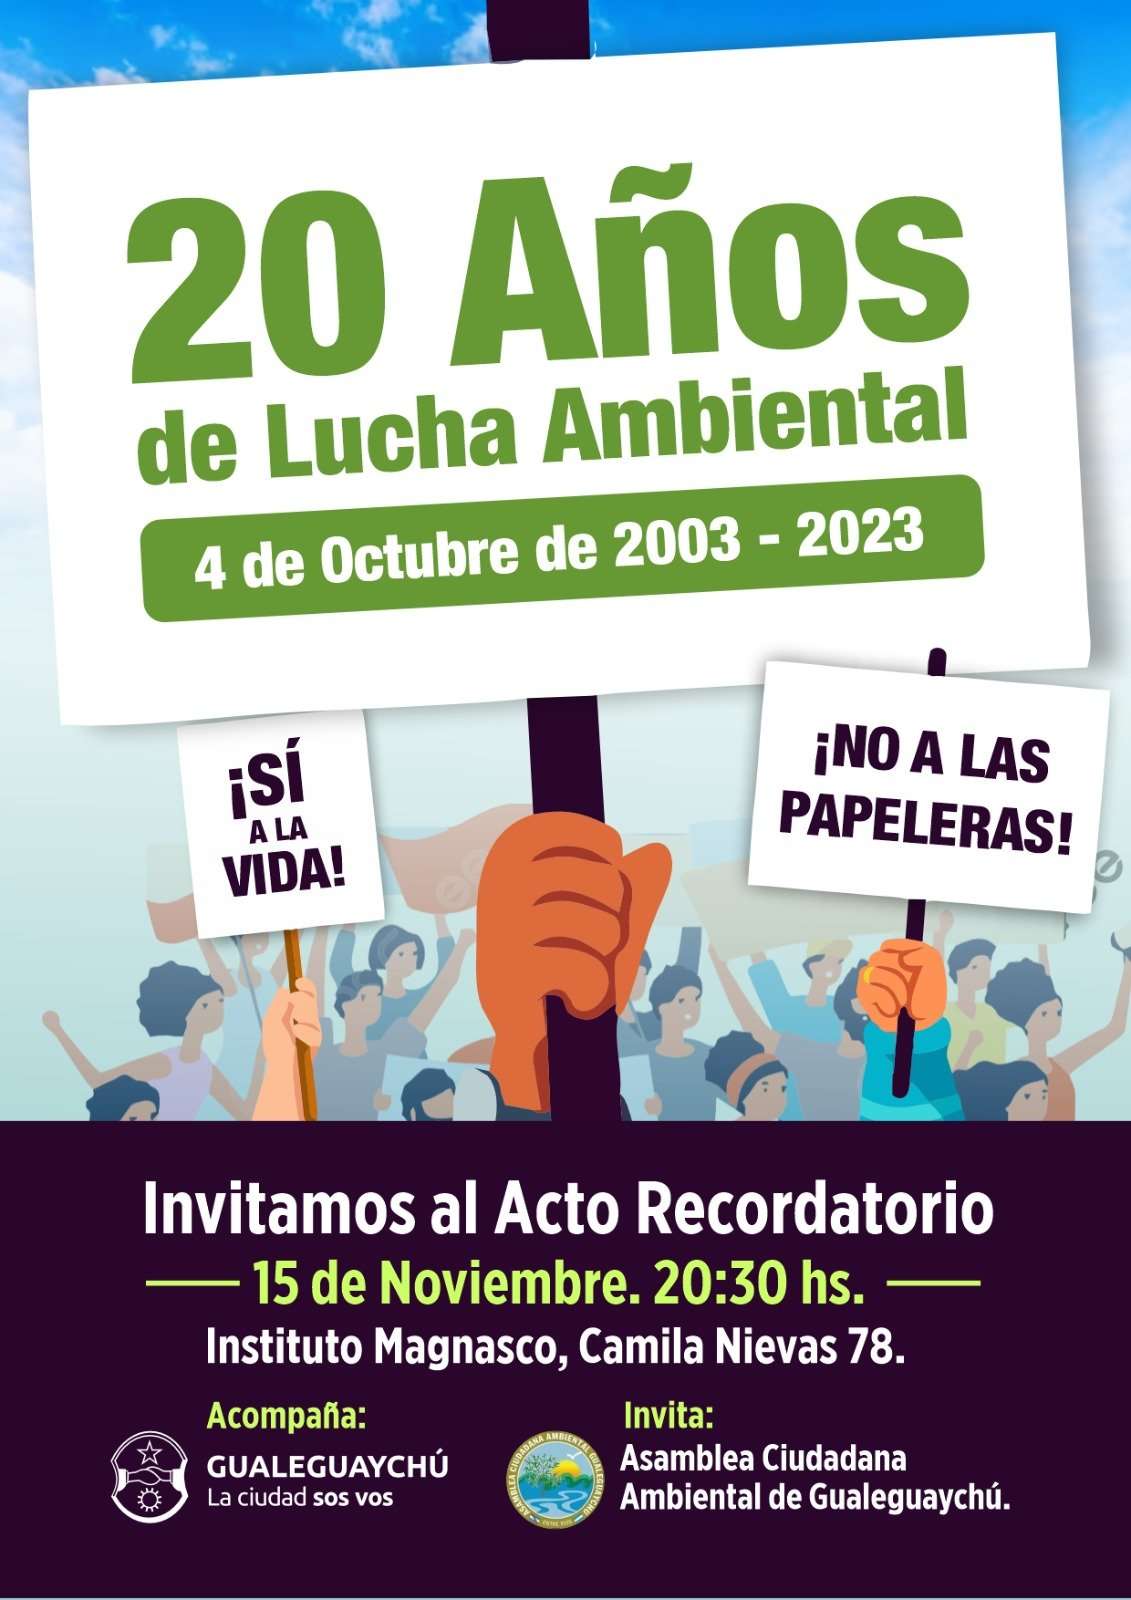 La Asamblea Ciudadana Ambiental de Gualeguaychú realizará un acto por sus 20 años de lucha